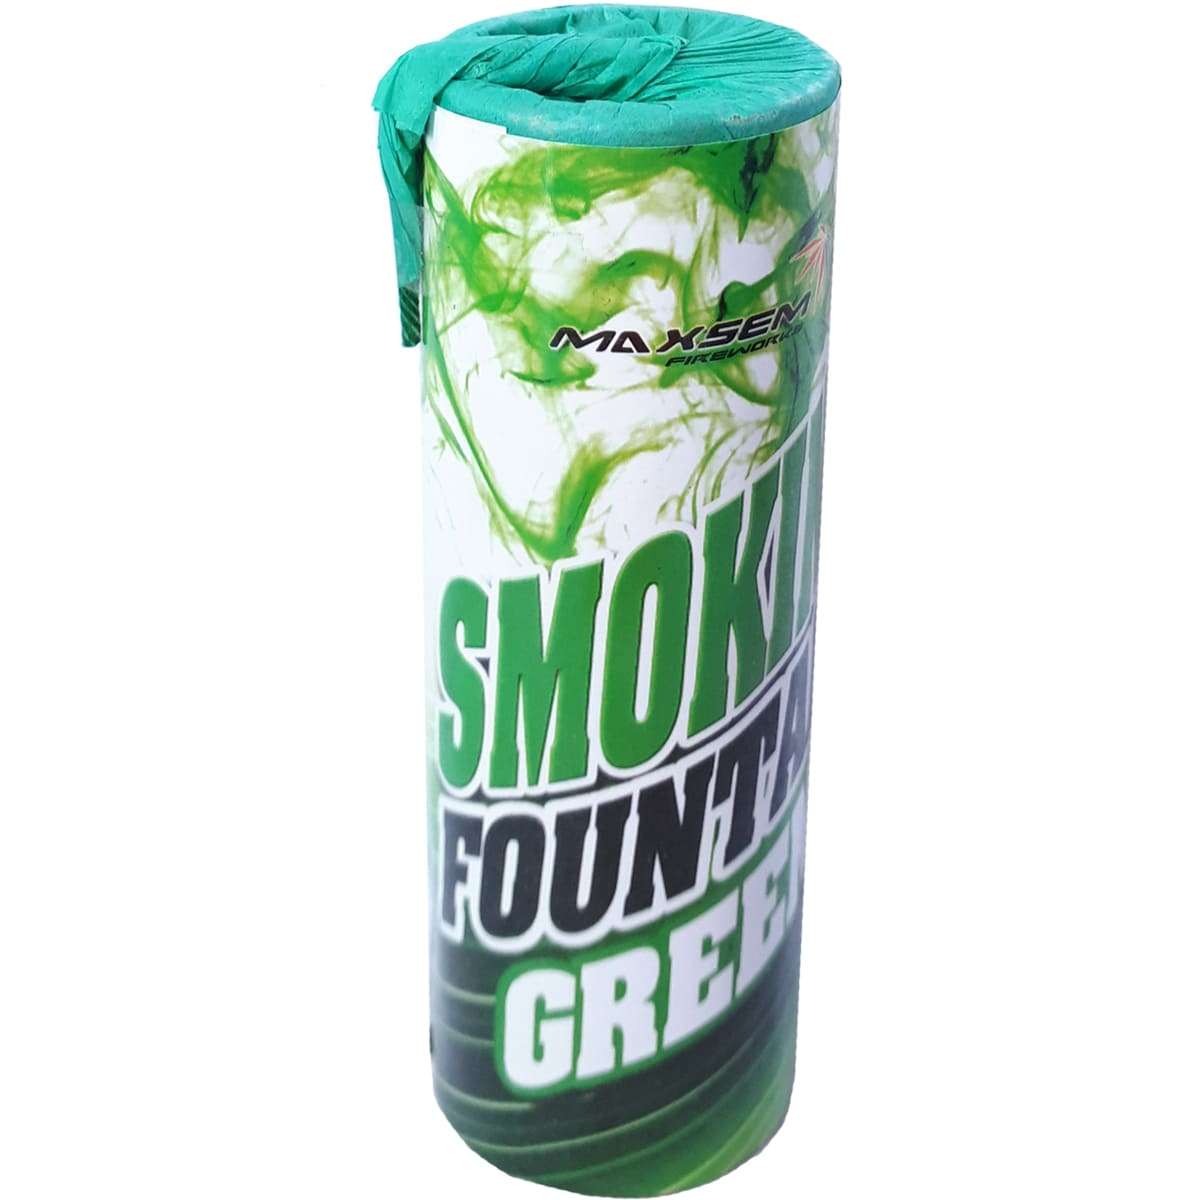 Зелёный цветной дым для фото, 30сек картинка